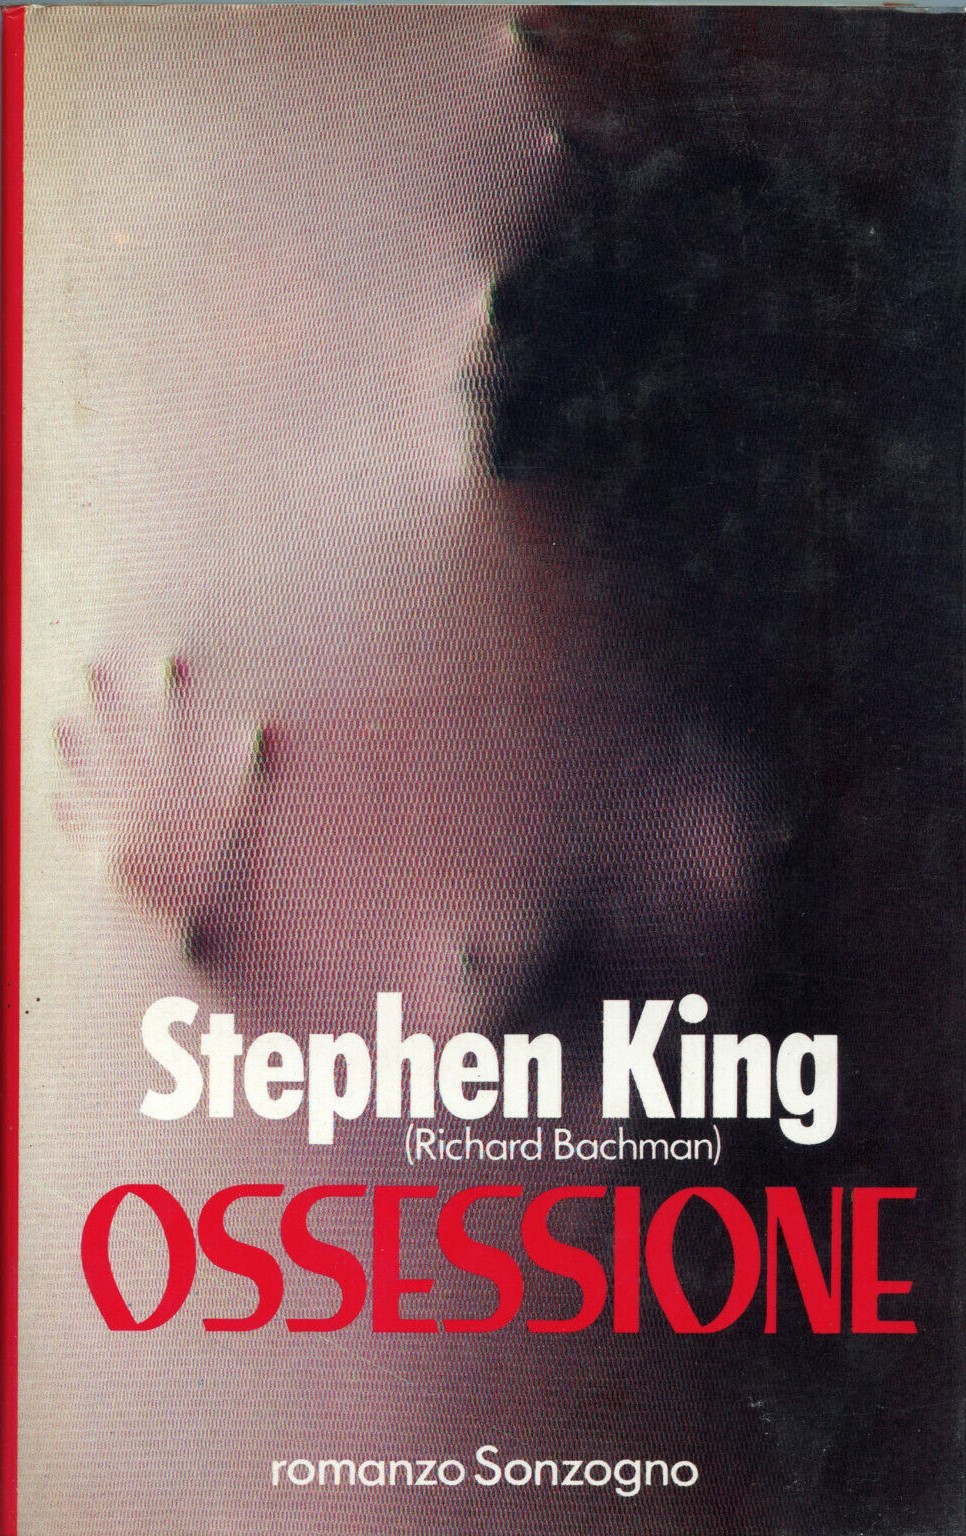 L’ossessione di “Ossessione” di Stephen King: non c’è più limite nelle valutazioni del libro maledetto